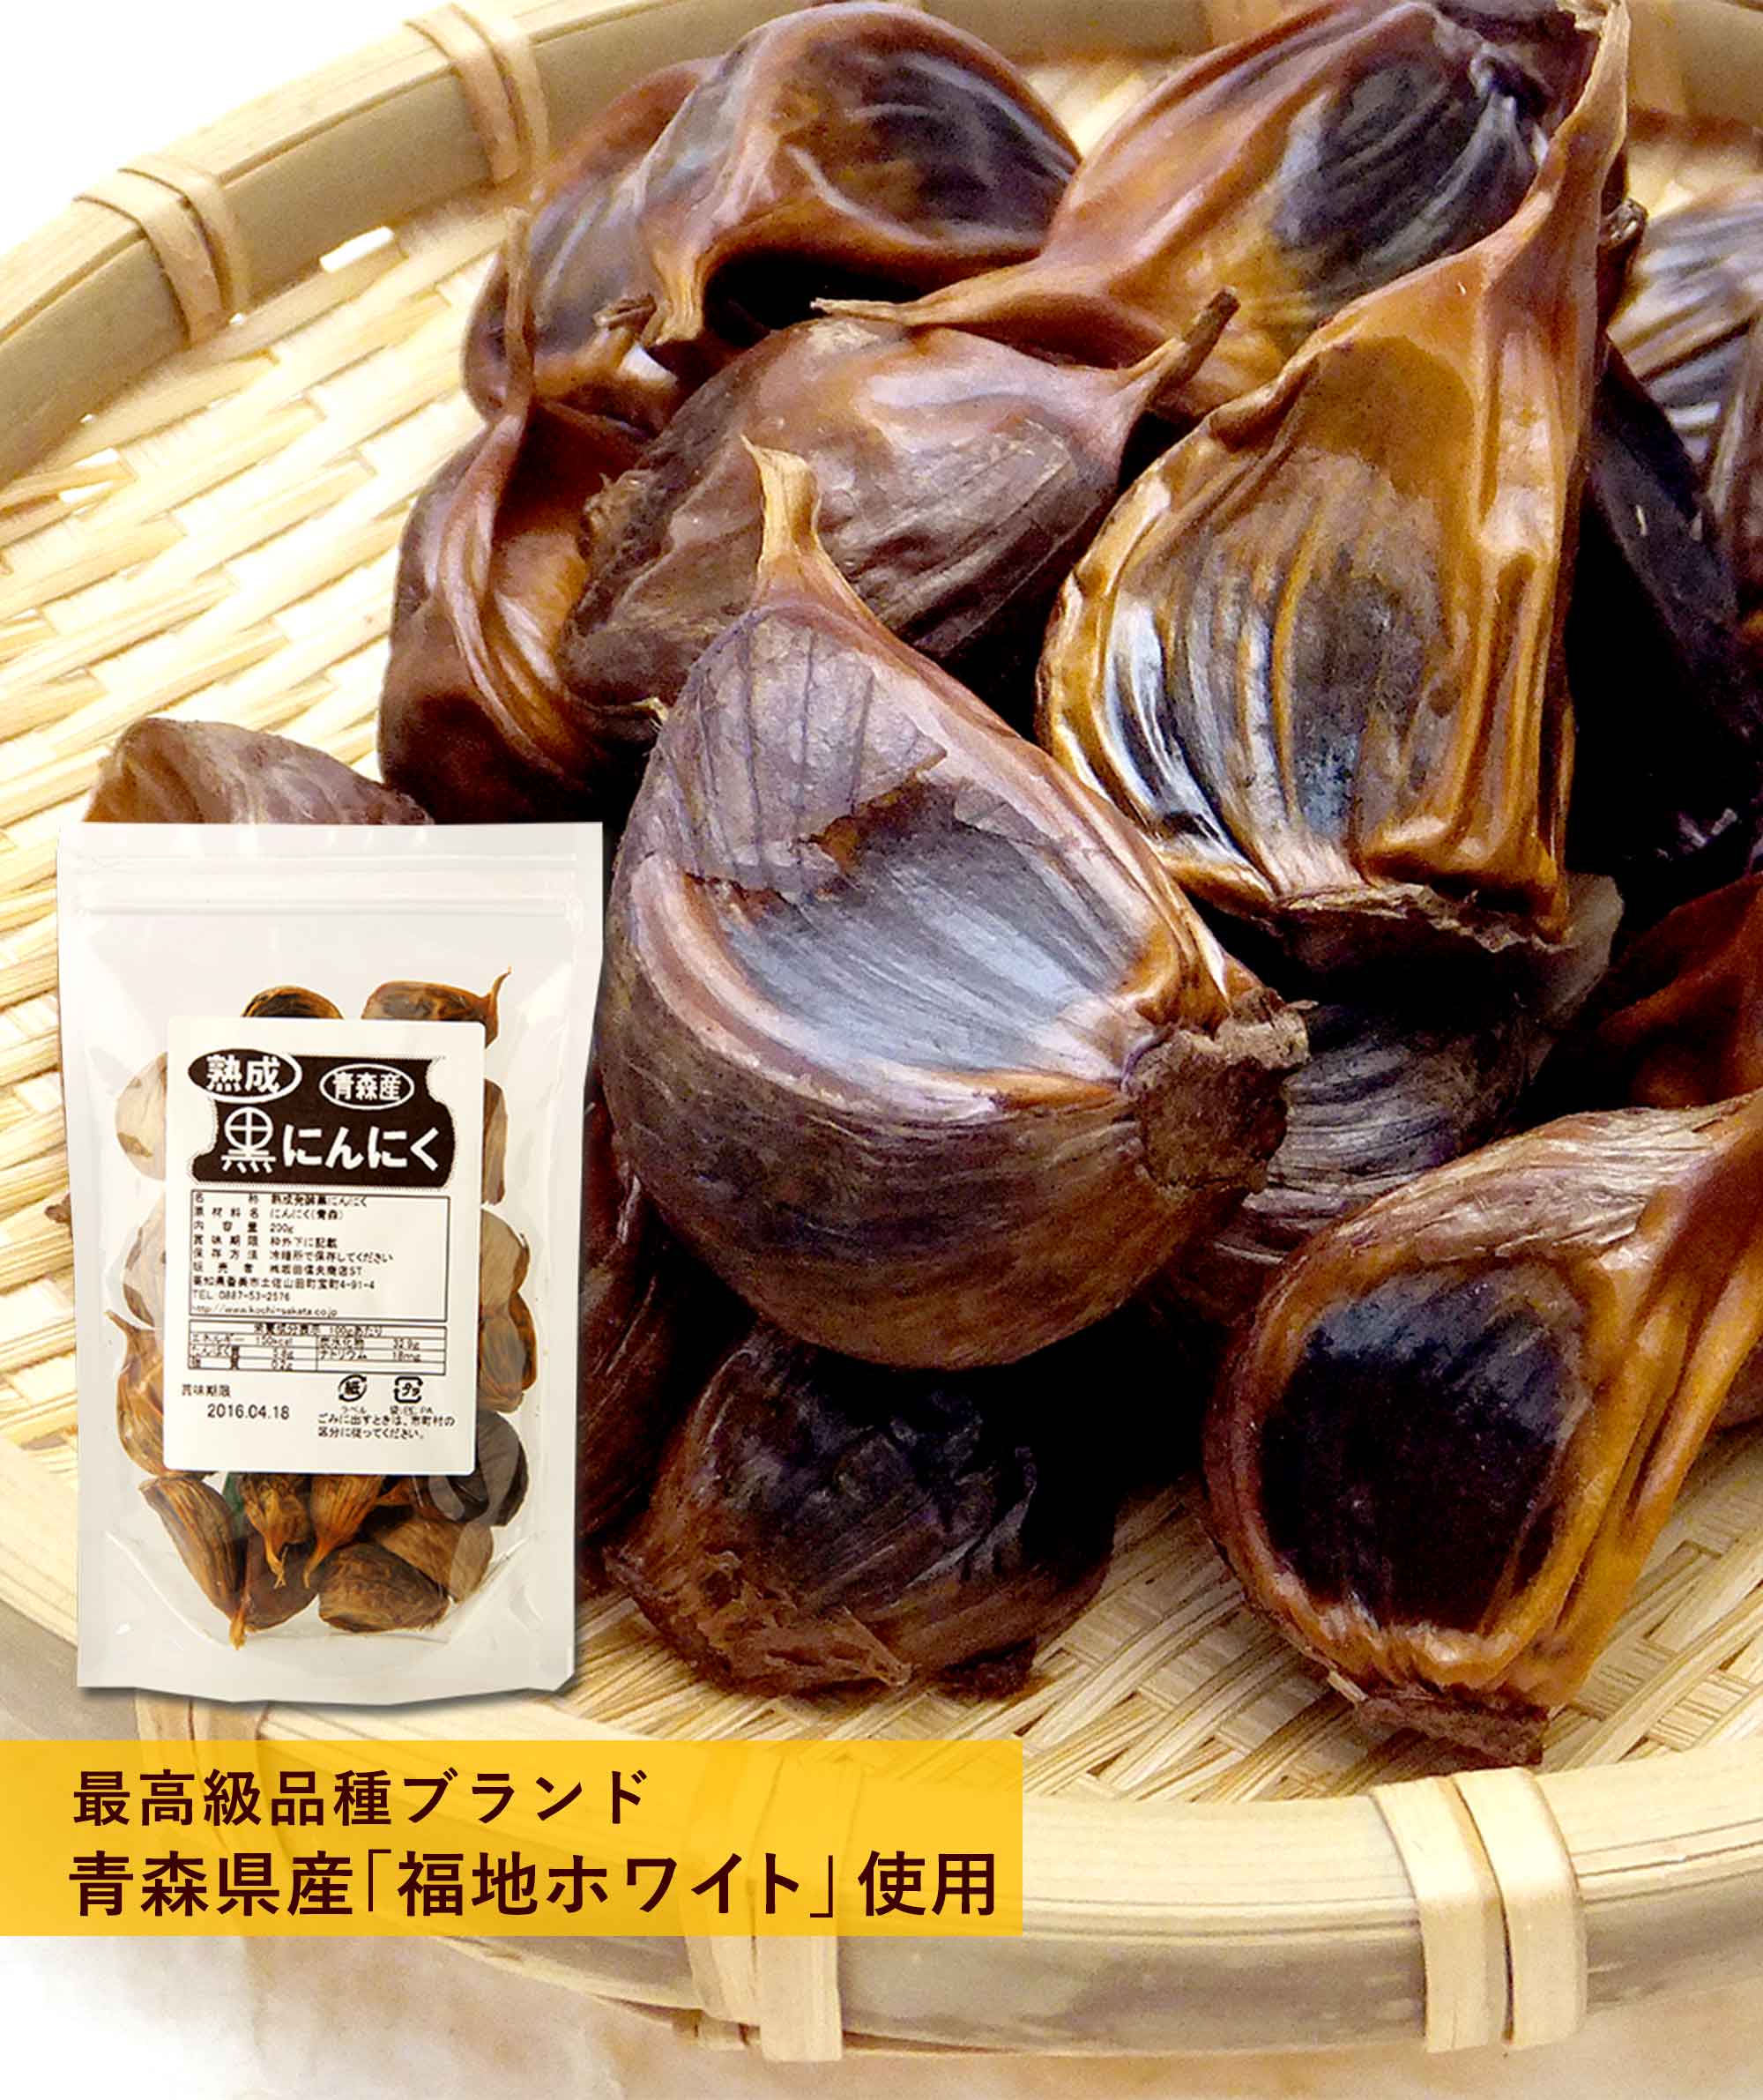 最高級品種ブランド 青森県産「福地ホワイト」使用の熟成発酵黒にんにく